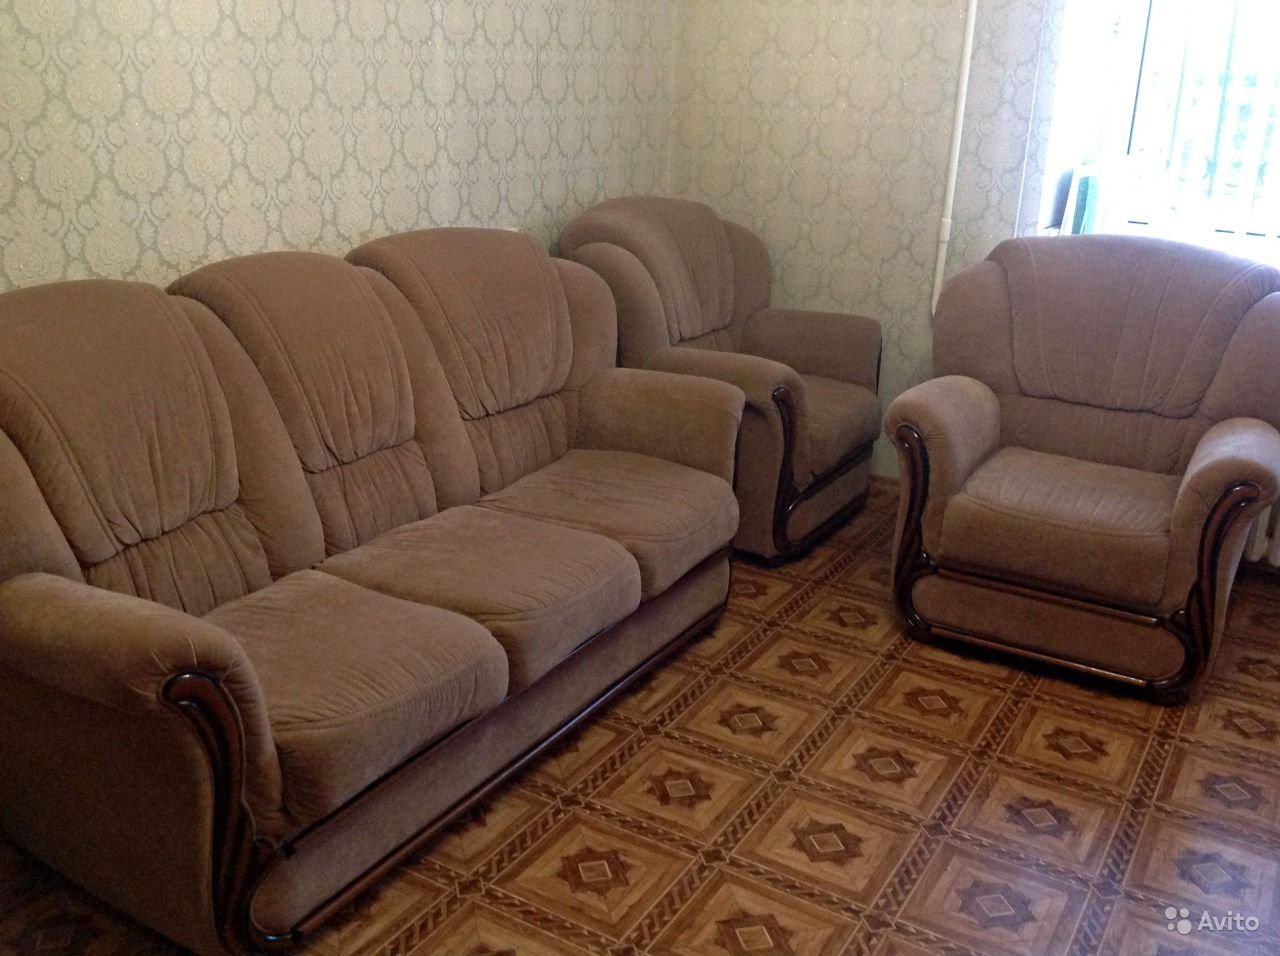 Авито энгельс диван. Комплект диван и 2 кресла. Комплект мебели диван и два кресла. Комплект диван и 2 кресла до 20000 рублей. Комплект диван и 2 кресла мягкие серый.